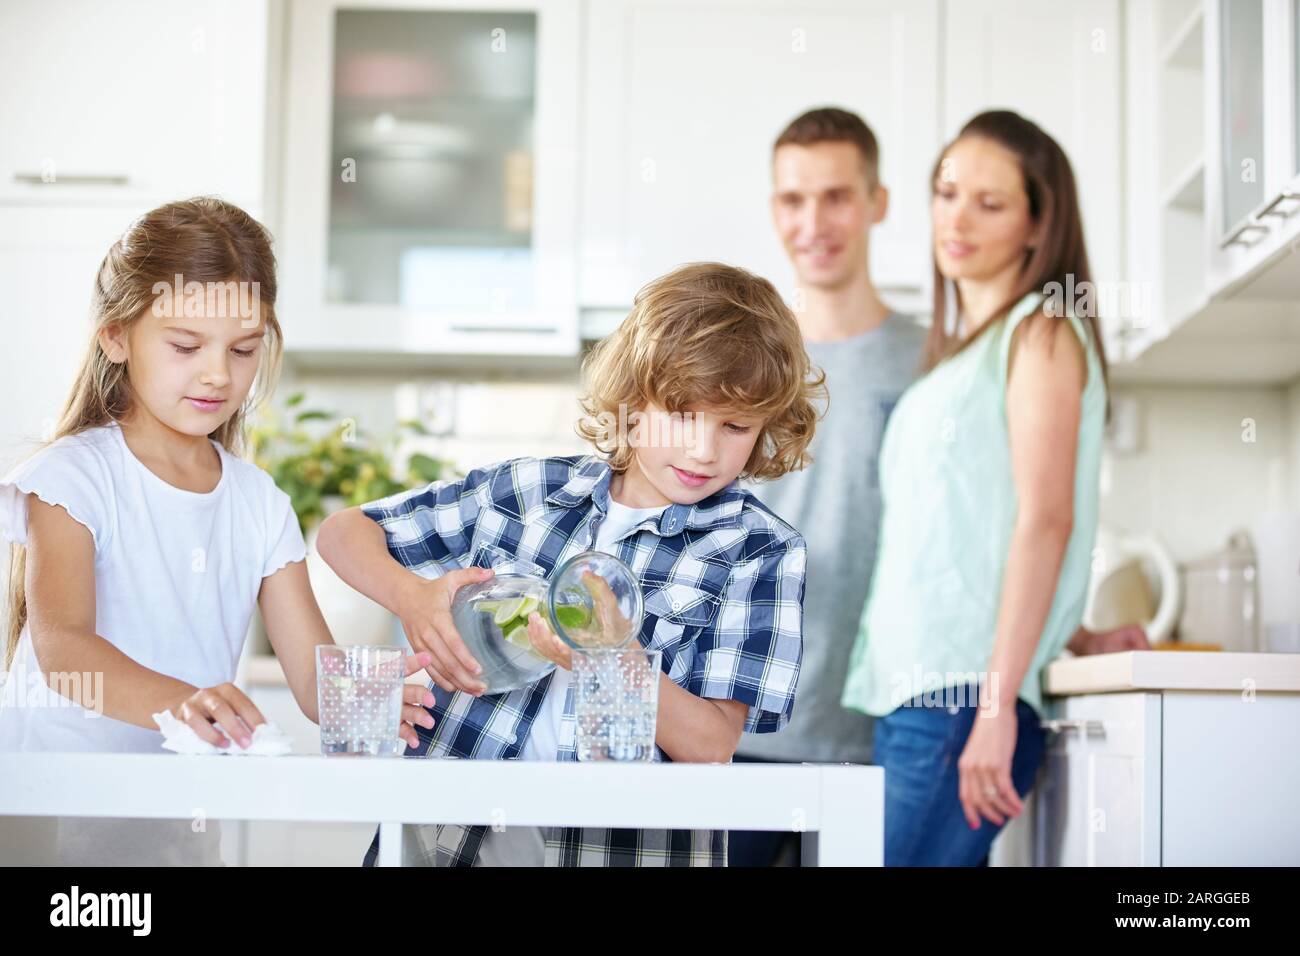 Zwei Kinder trinken in der Küche unter Aufsicht ihrer Eltern Wasser mit frischem Limes Stockfoto